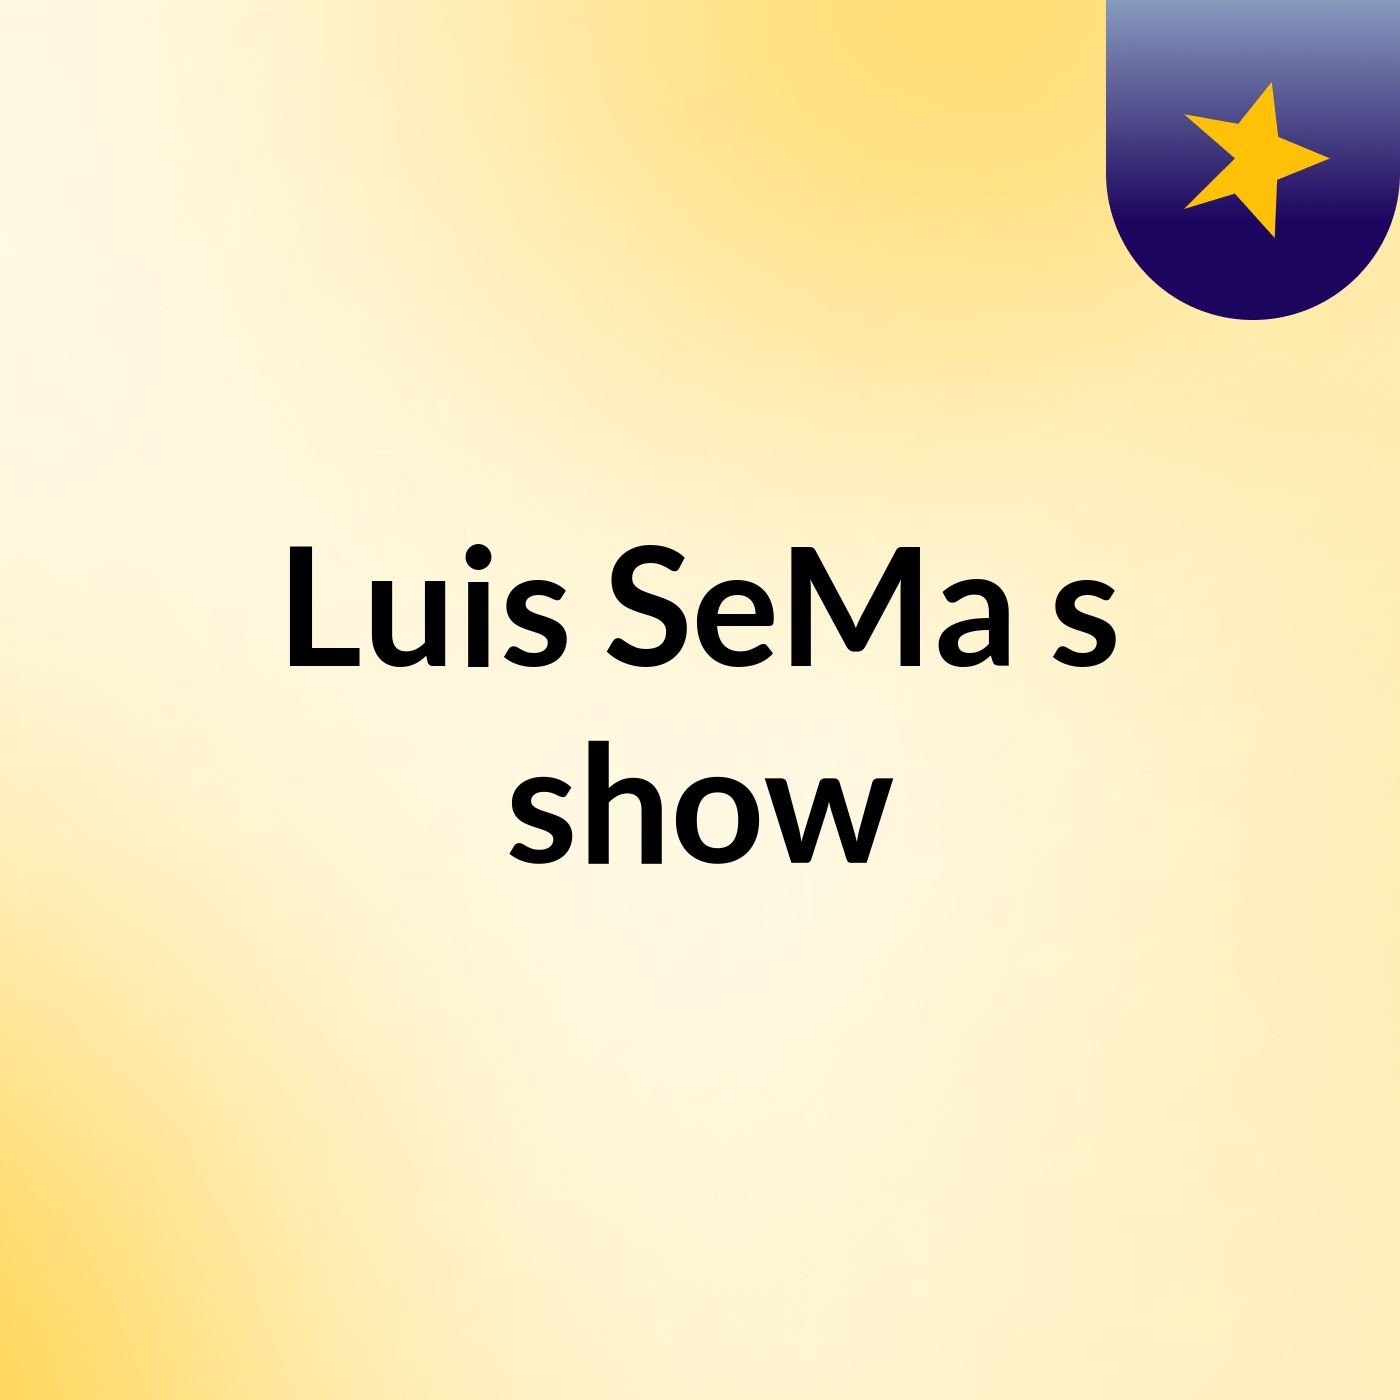 Luis SeMa's show